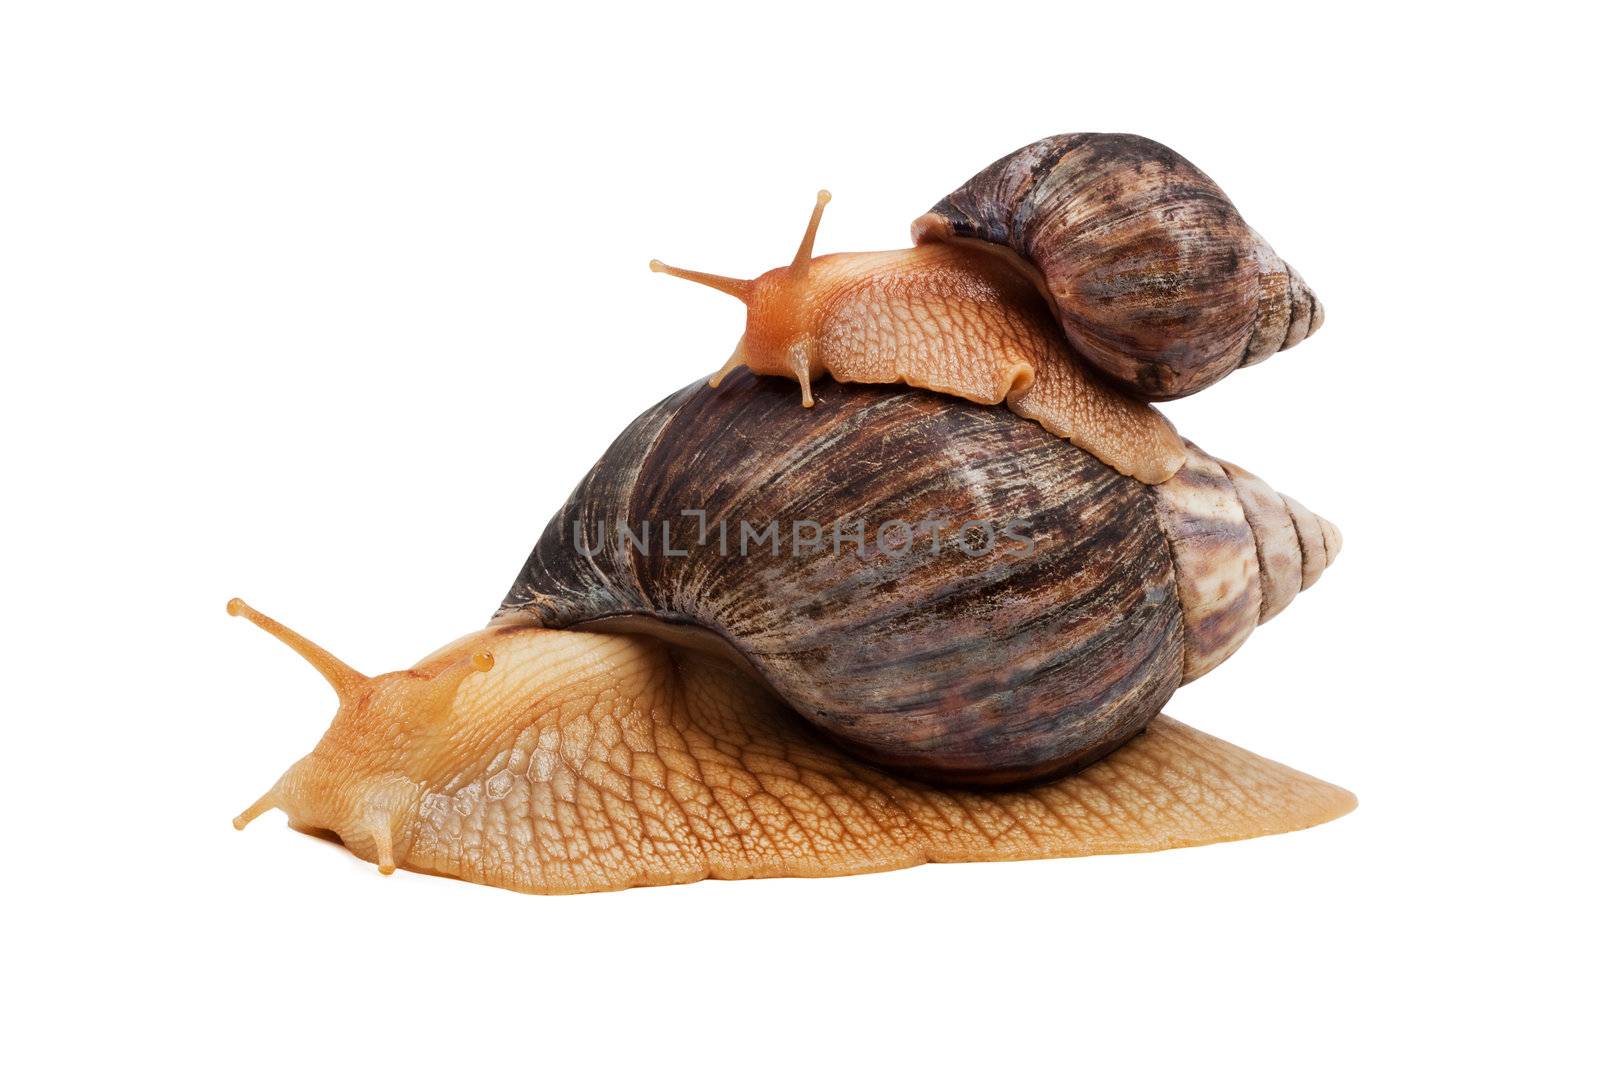 Snails by bloodua